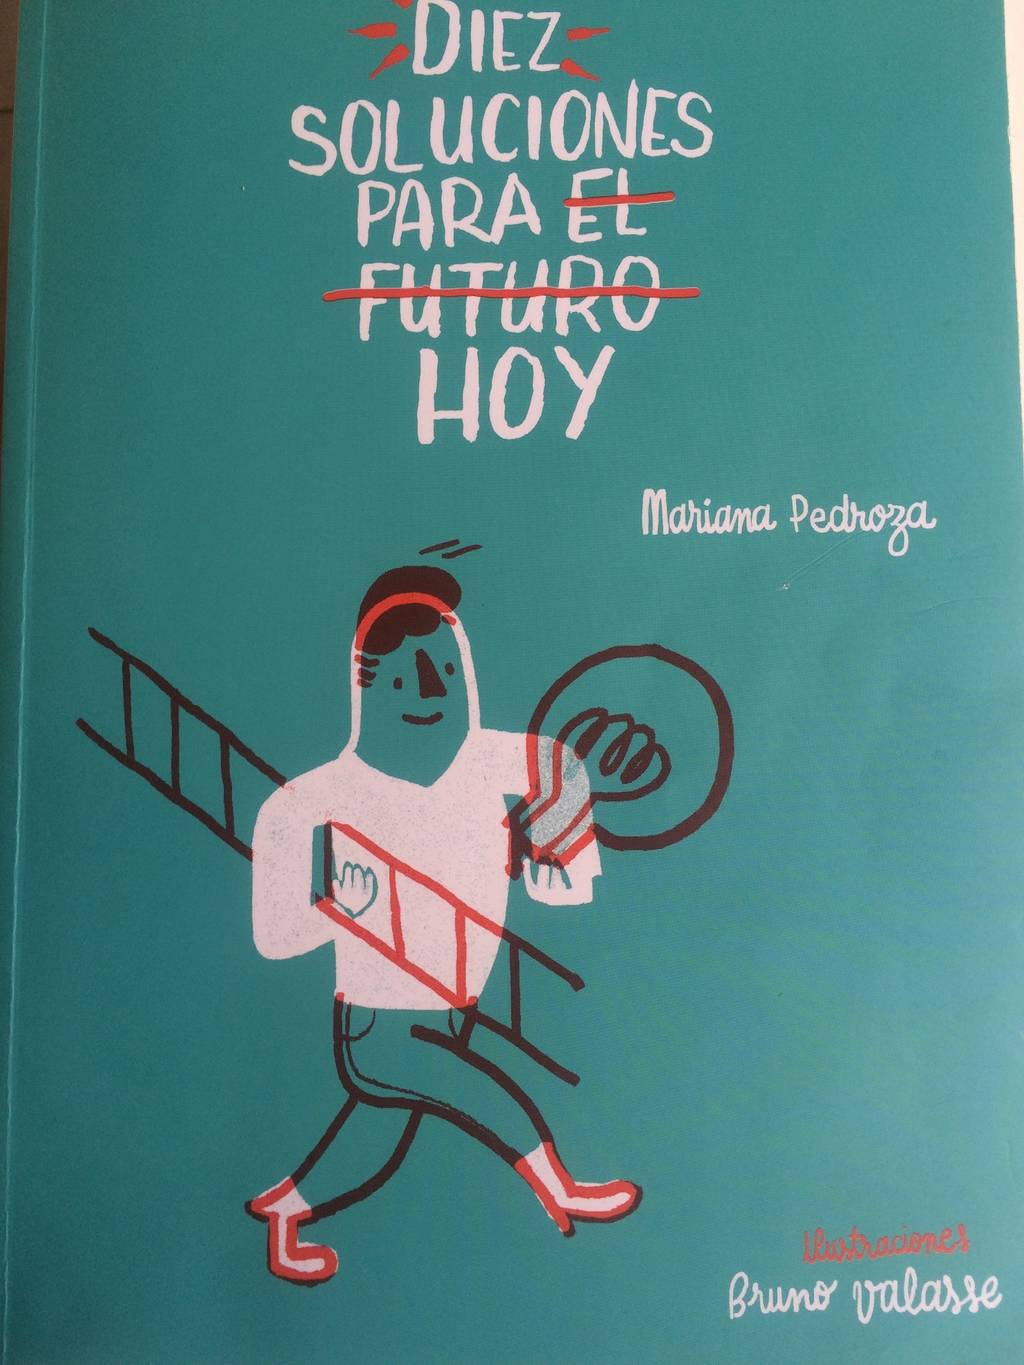 El libro. La escritora Mariana Pedroza aborda problemas de México y las ideas para enfrentarlos en su más reciente publicación.